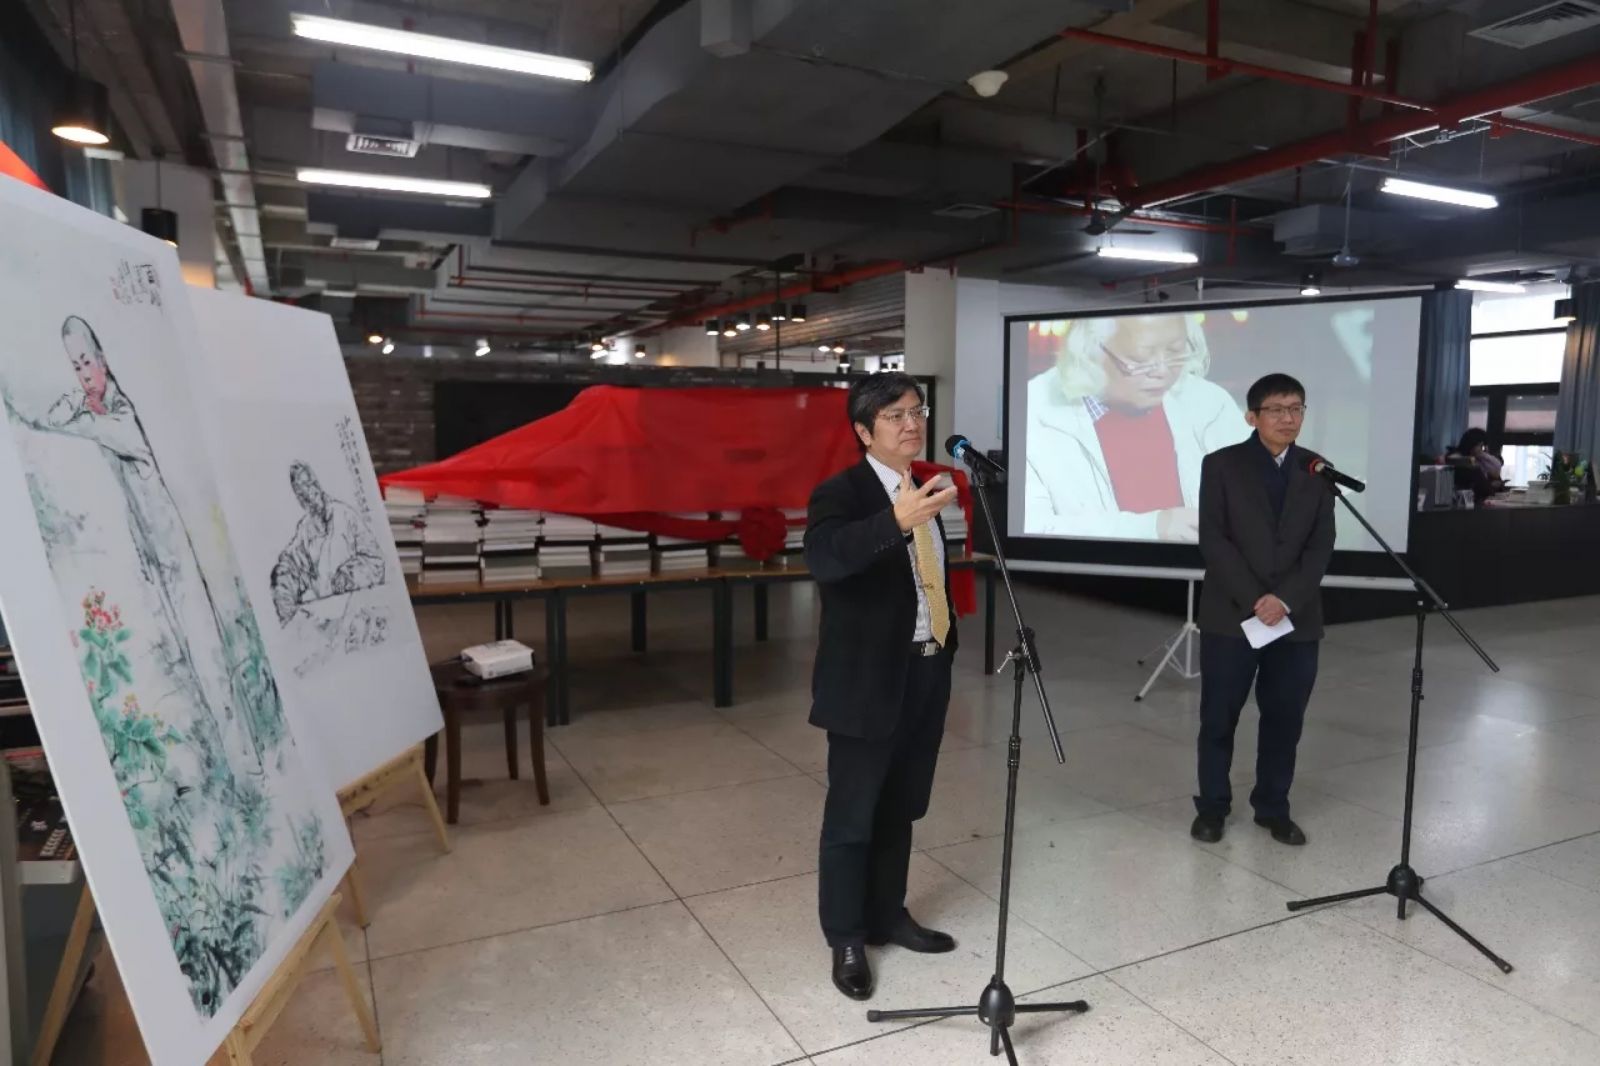 吴山明教授图书捐赠仪式在中国美院象山校区隆重举行